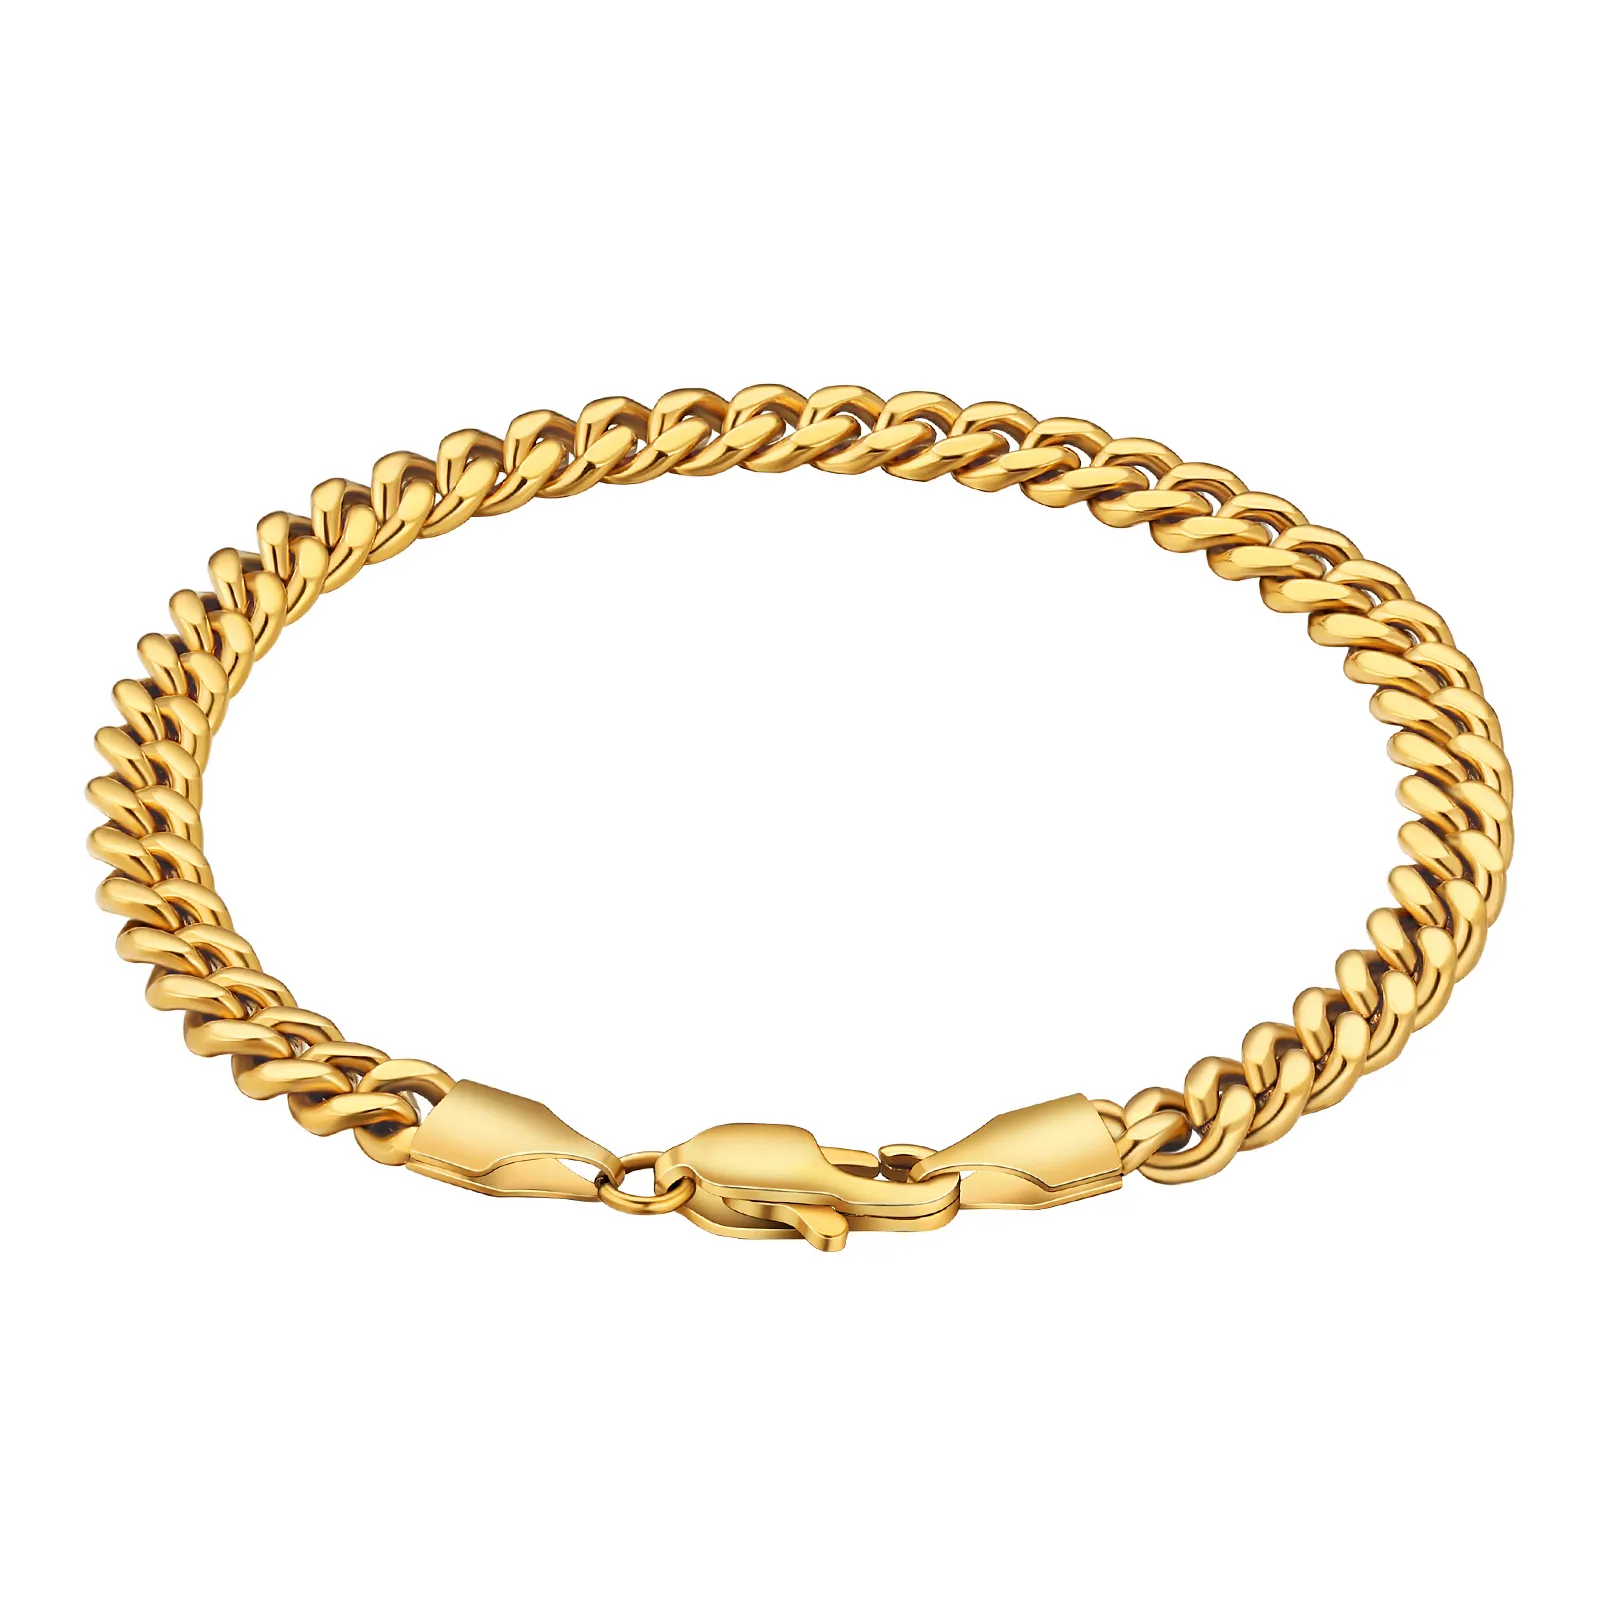 KRKC grosir diskon besar 18K gelang berlapis emas 316L baja tahan karat Tautan Kuba rantai tali Figaro desain gelang emas untuk pria wanita